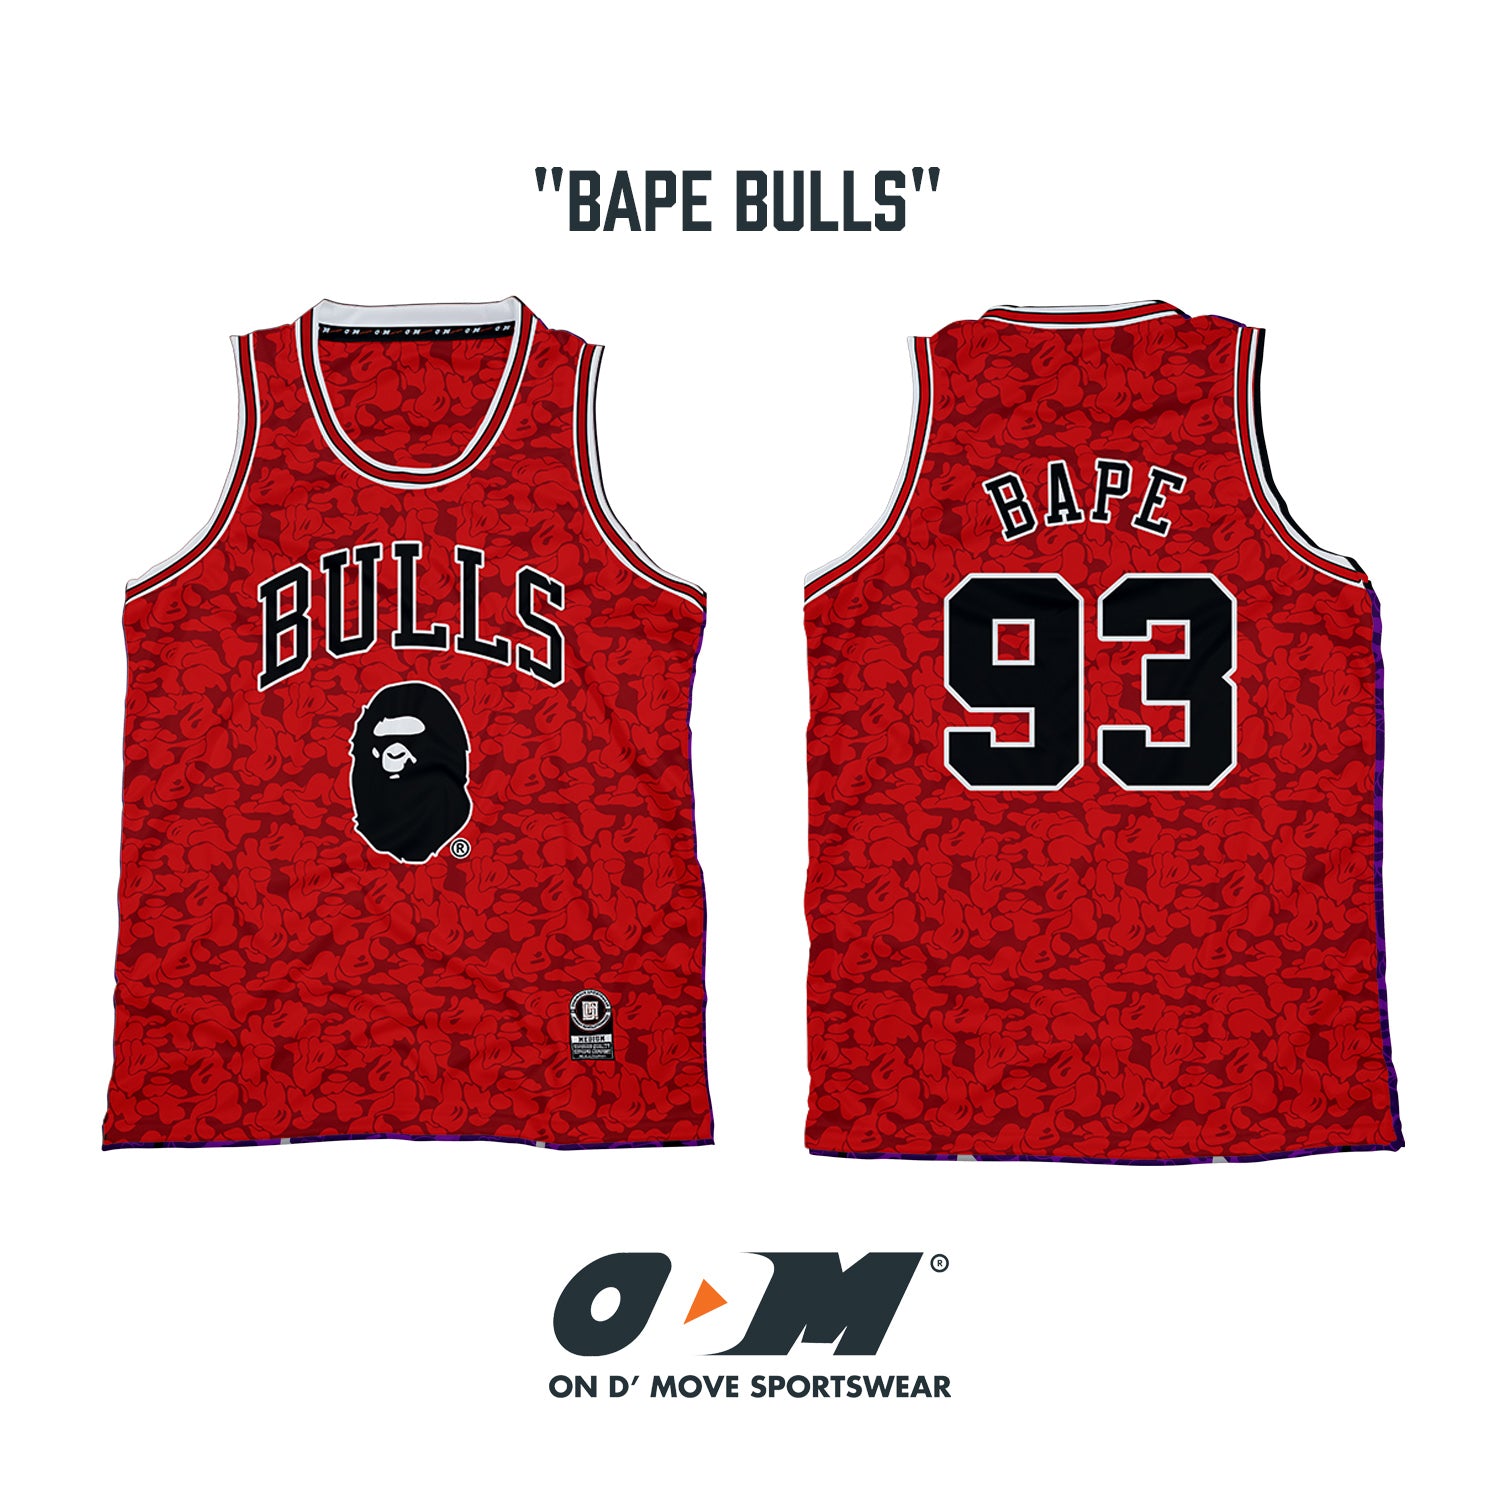 BAPE Bulls Jersey